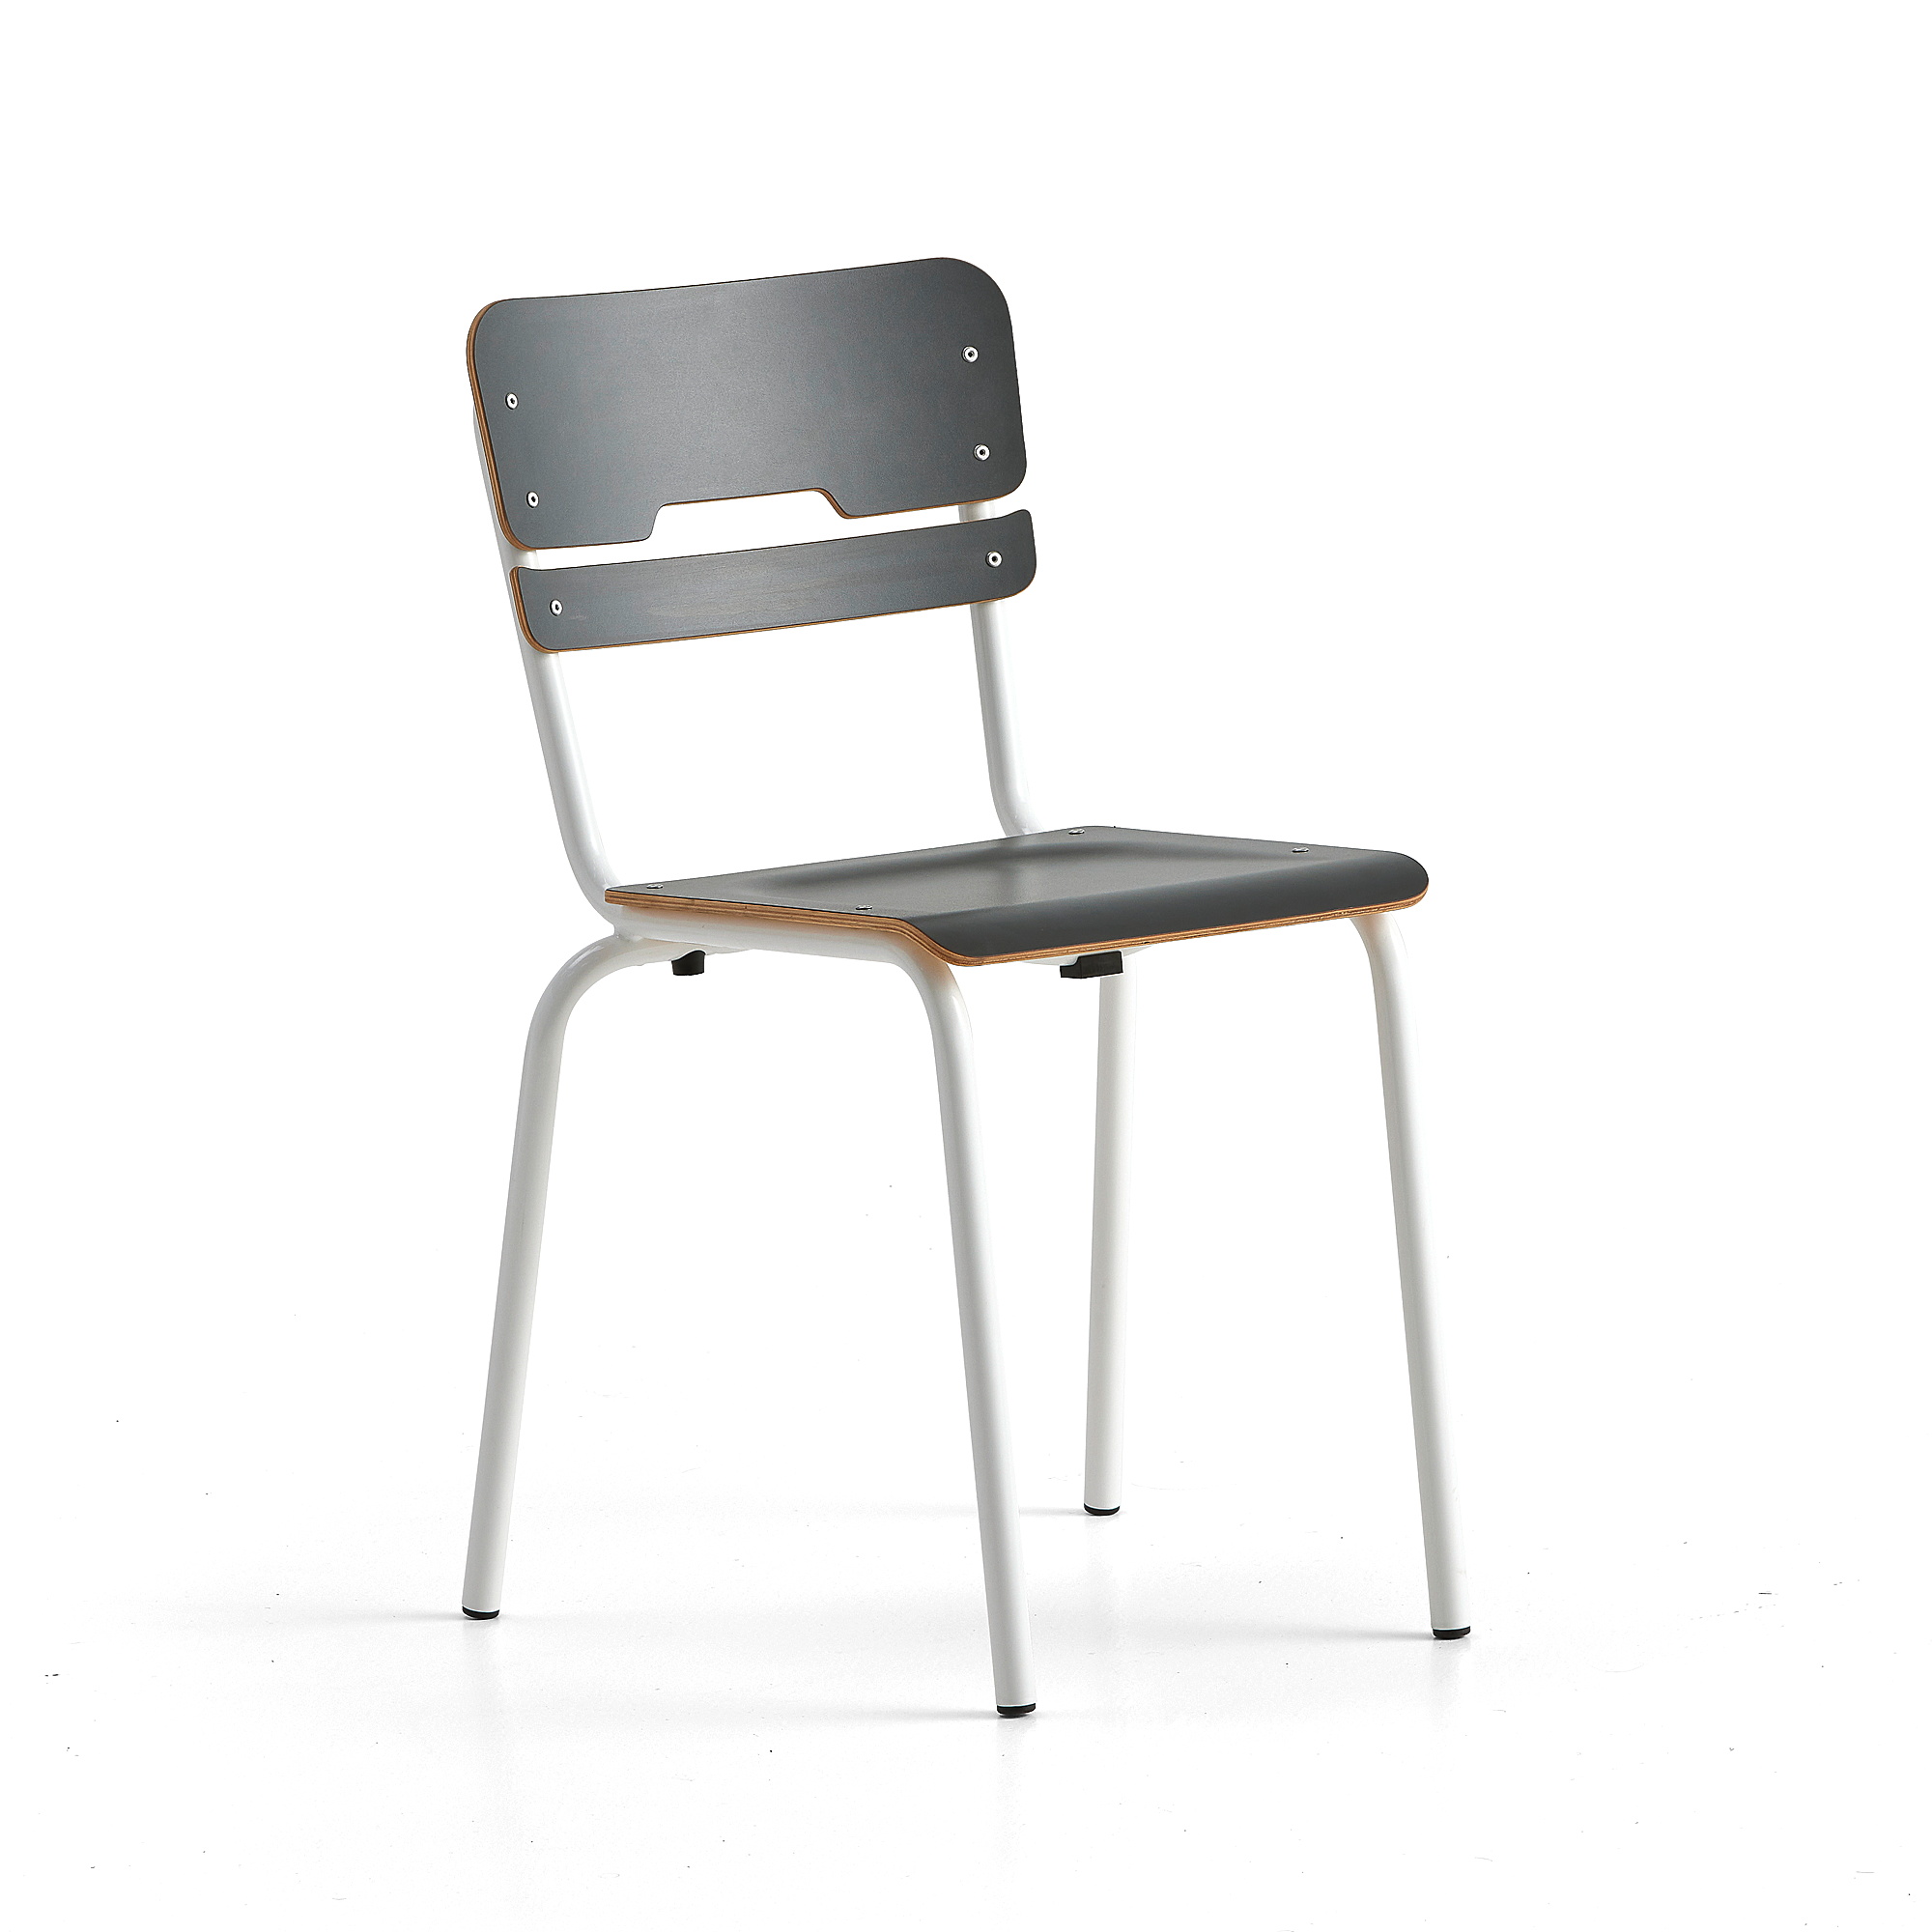 Školní židle SCIENTIA, sedák 360x360 mm, výška 460 mm, bílá/antracitová